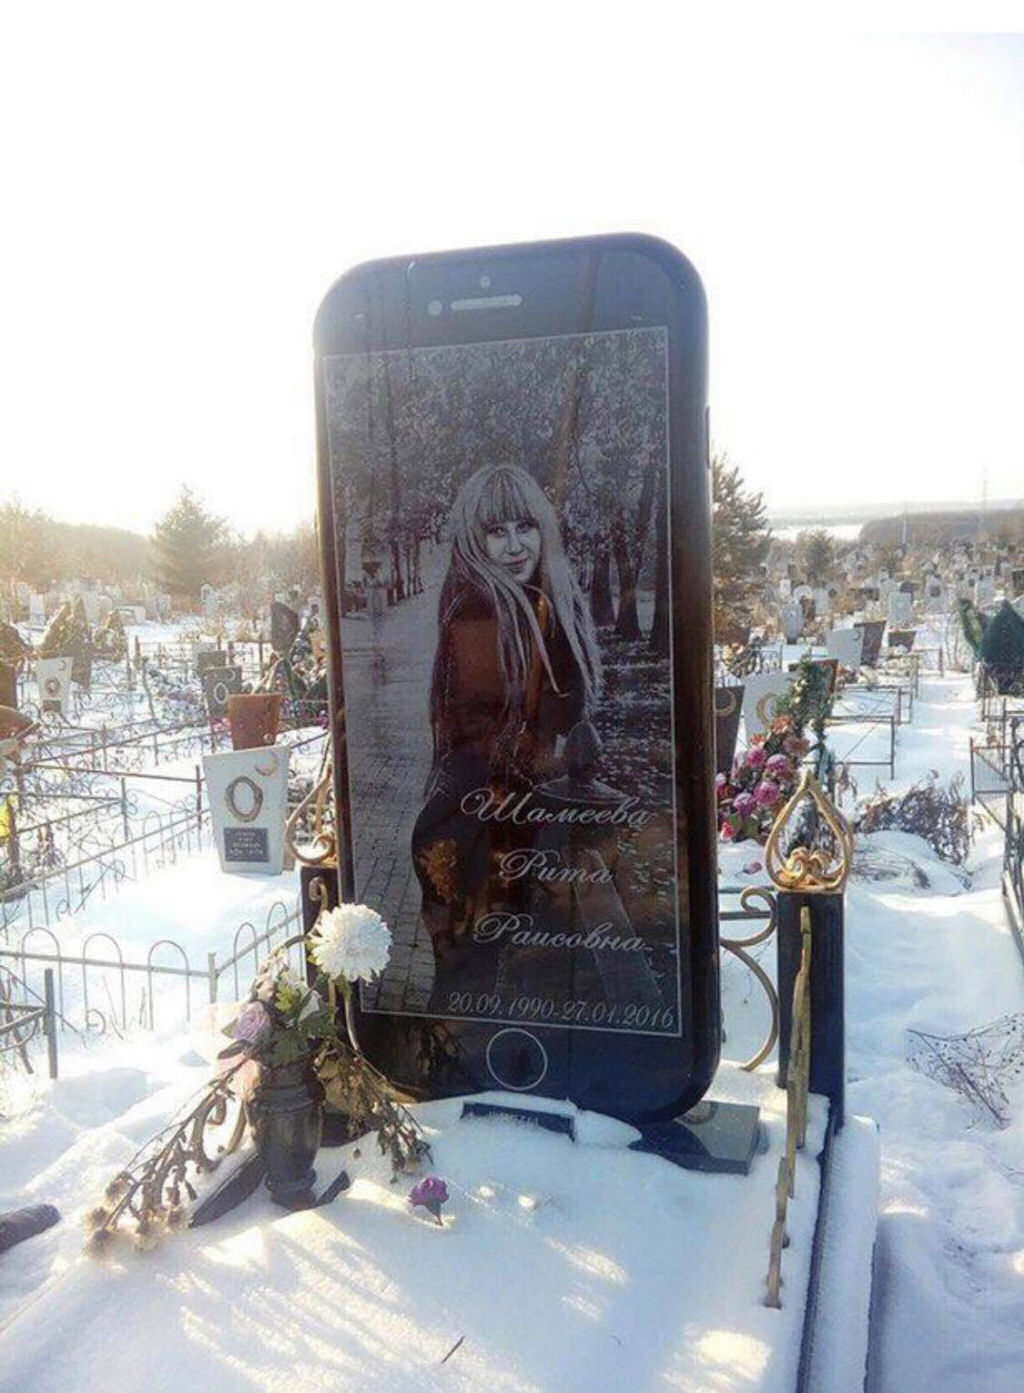 Russo cria lpide em formato de celular para o tmulo de sua filha de 25 anos